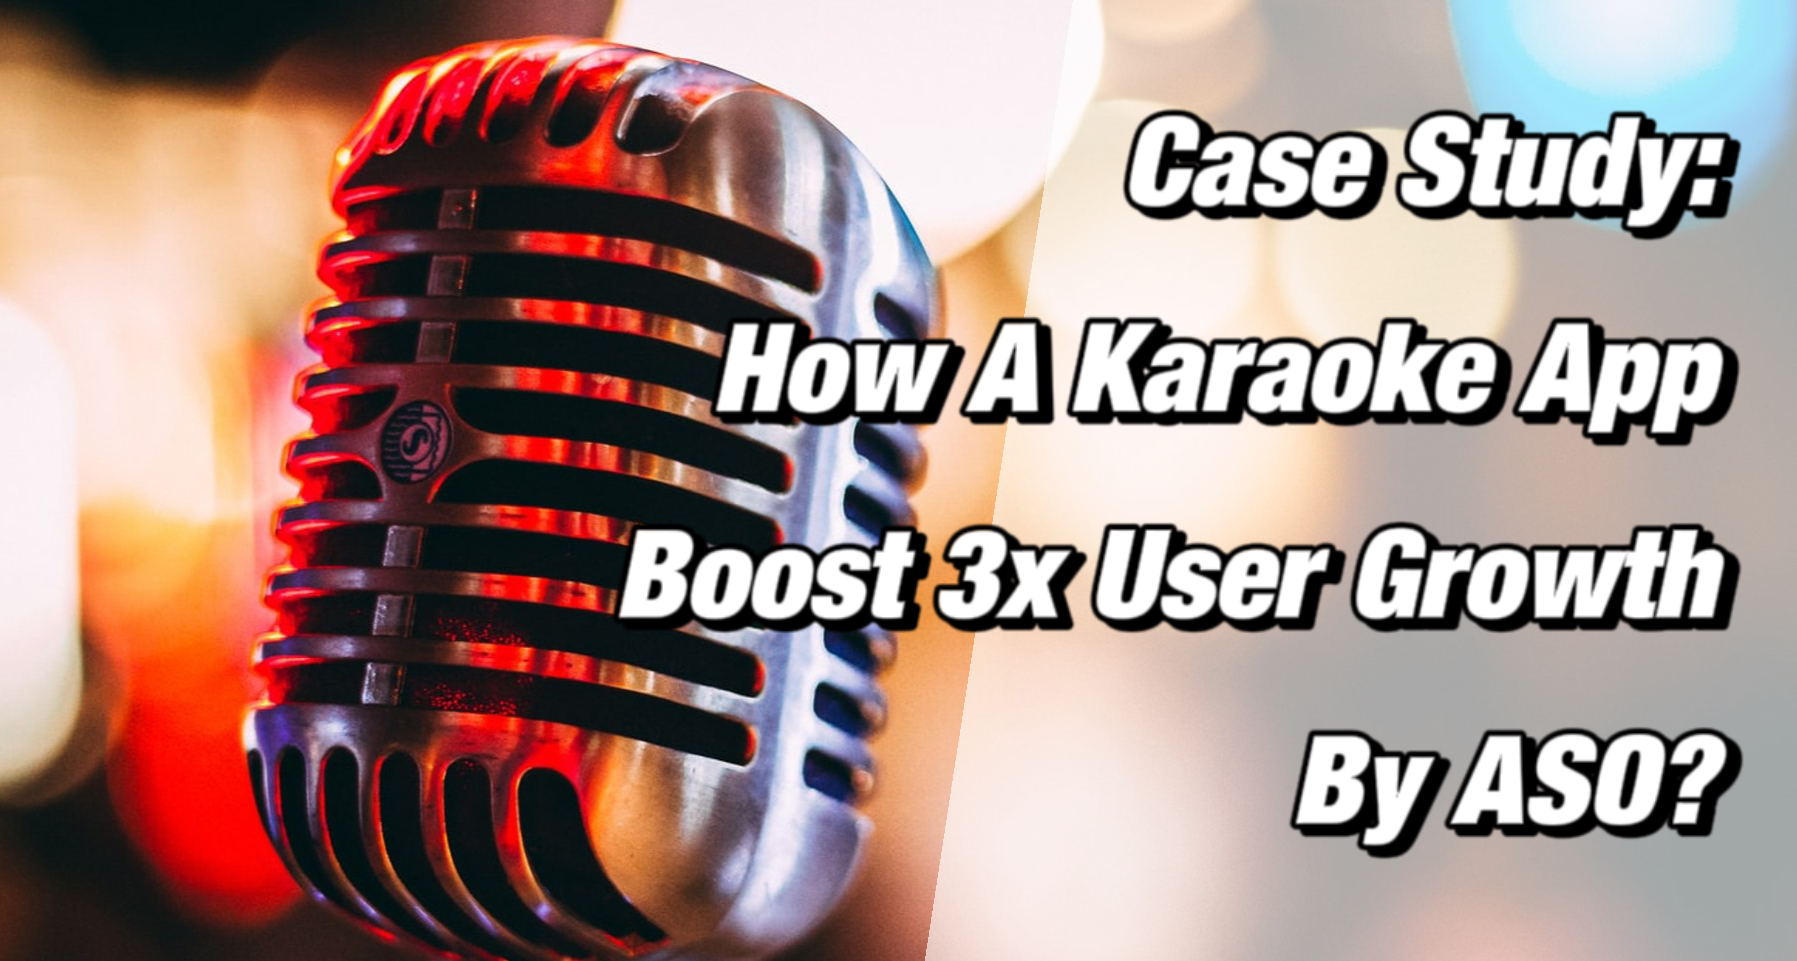 Karaoke App Win 3x User Growth